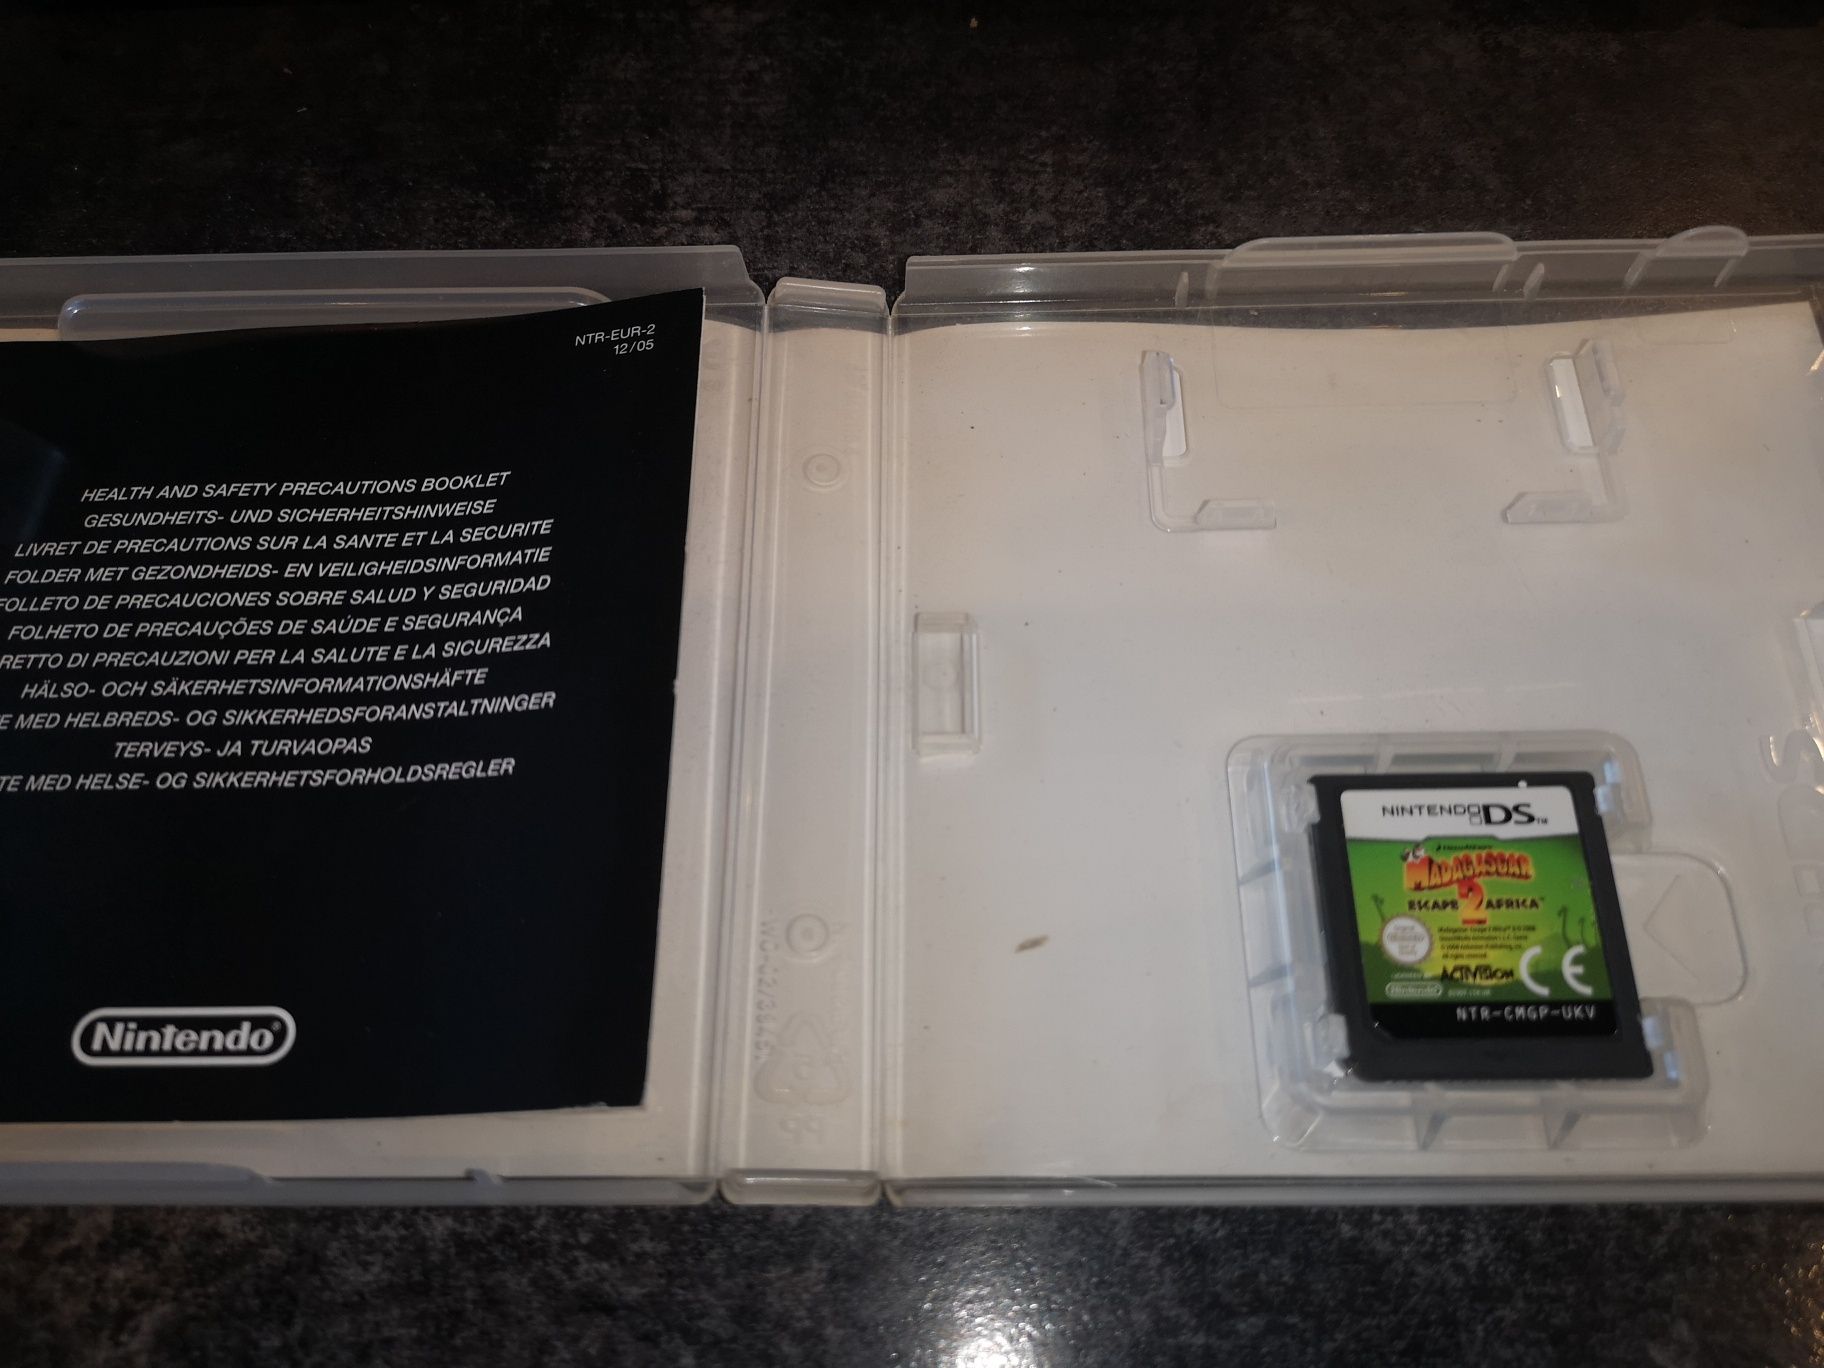 Madagascar 2 DS Nintendo gra ANG (sklep Ursus) kioskzgrami